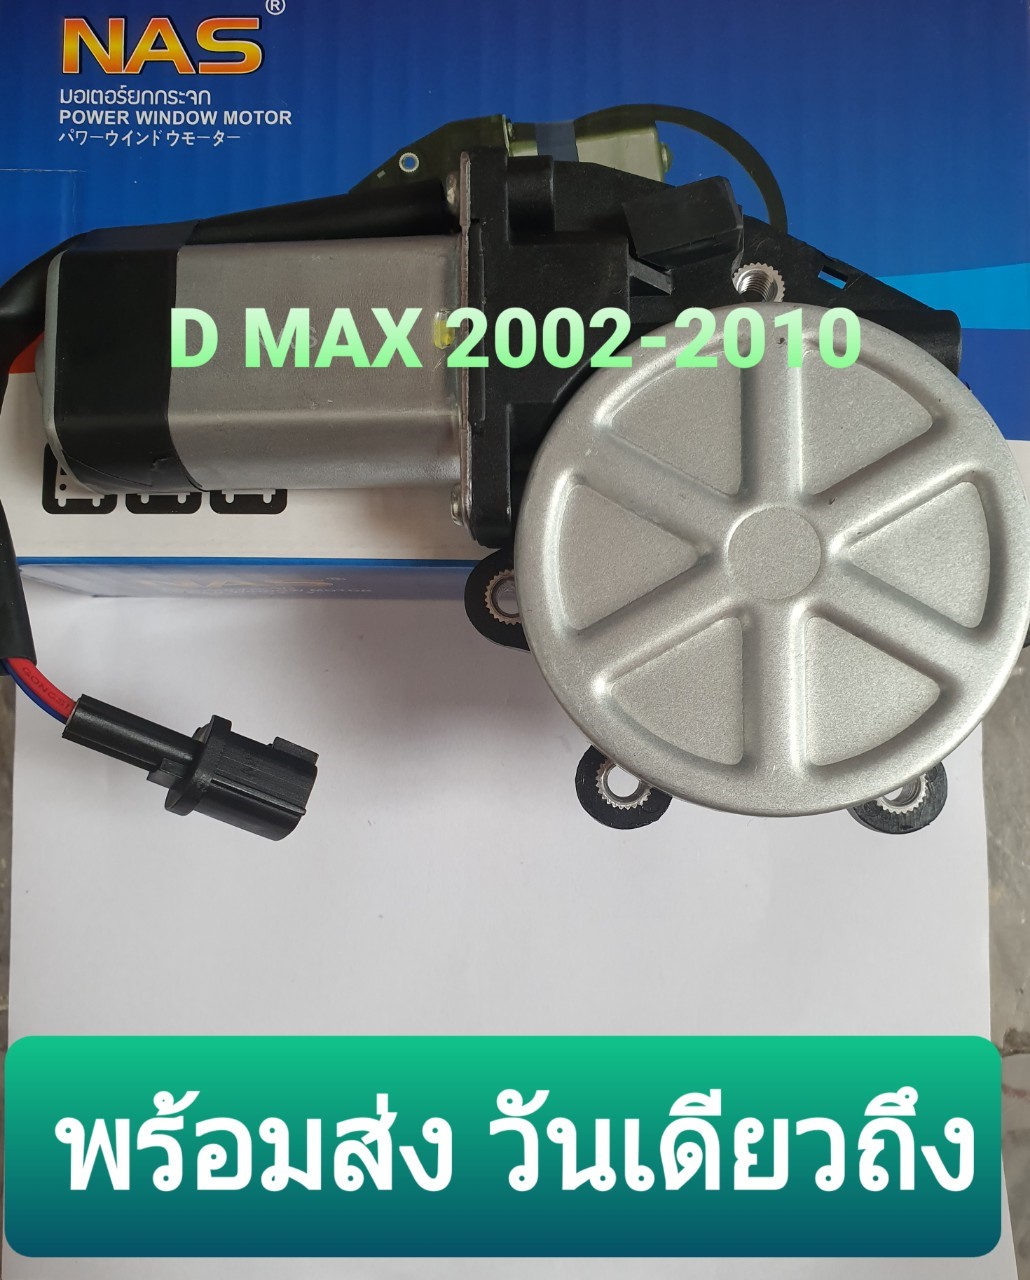 มอเตอร์กระจกไฟฟ้า  อีซูซุ ดีแม็ก 2002-2010 ISUZU Dmax 2002-2010 หน้าขวา FR